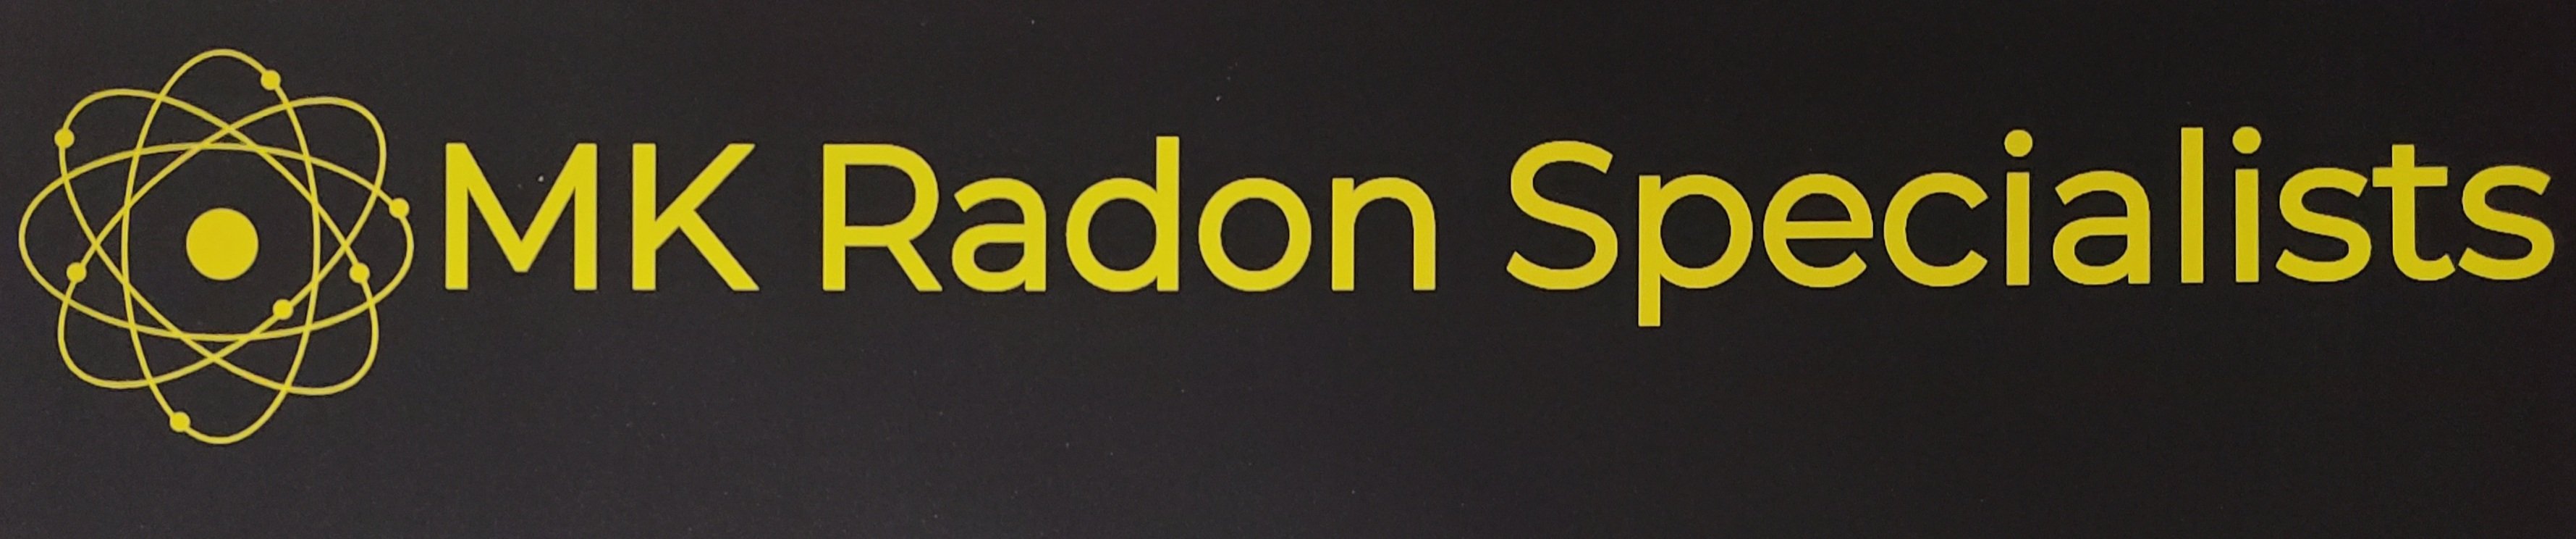 MK Radon Specialists Logo